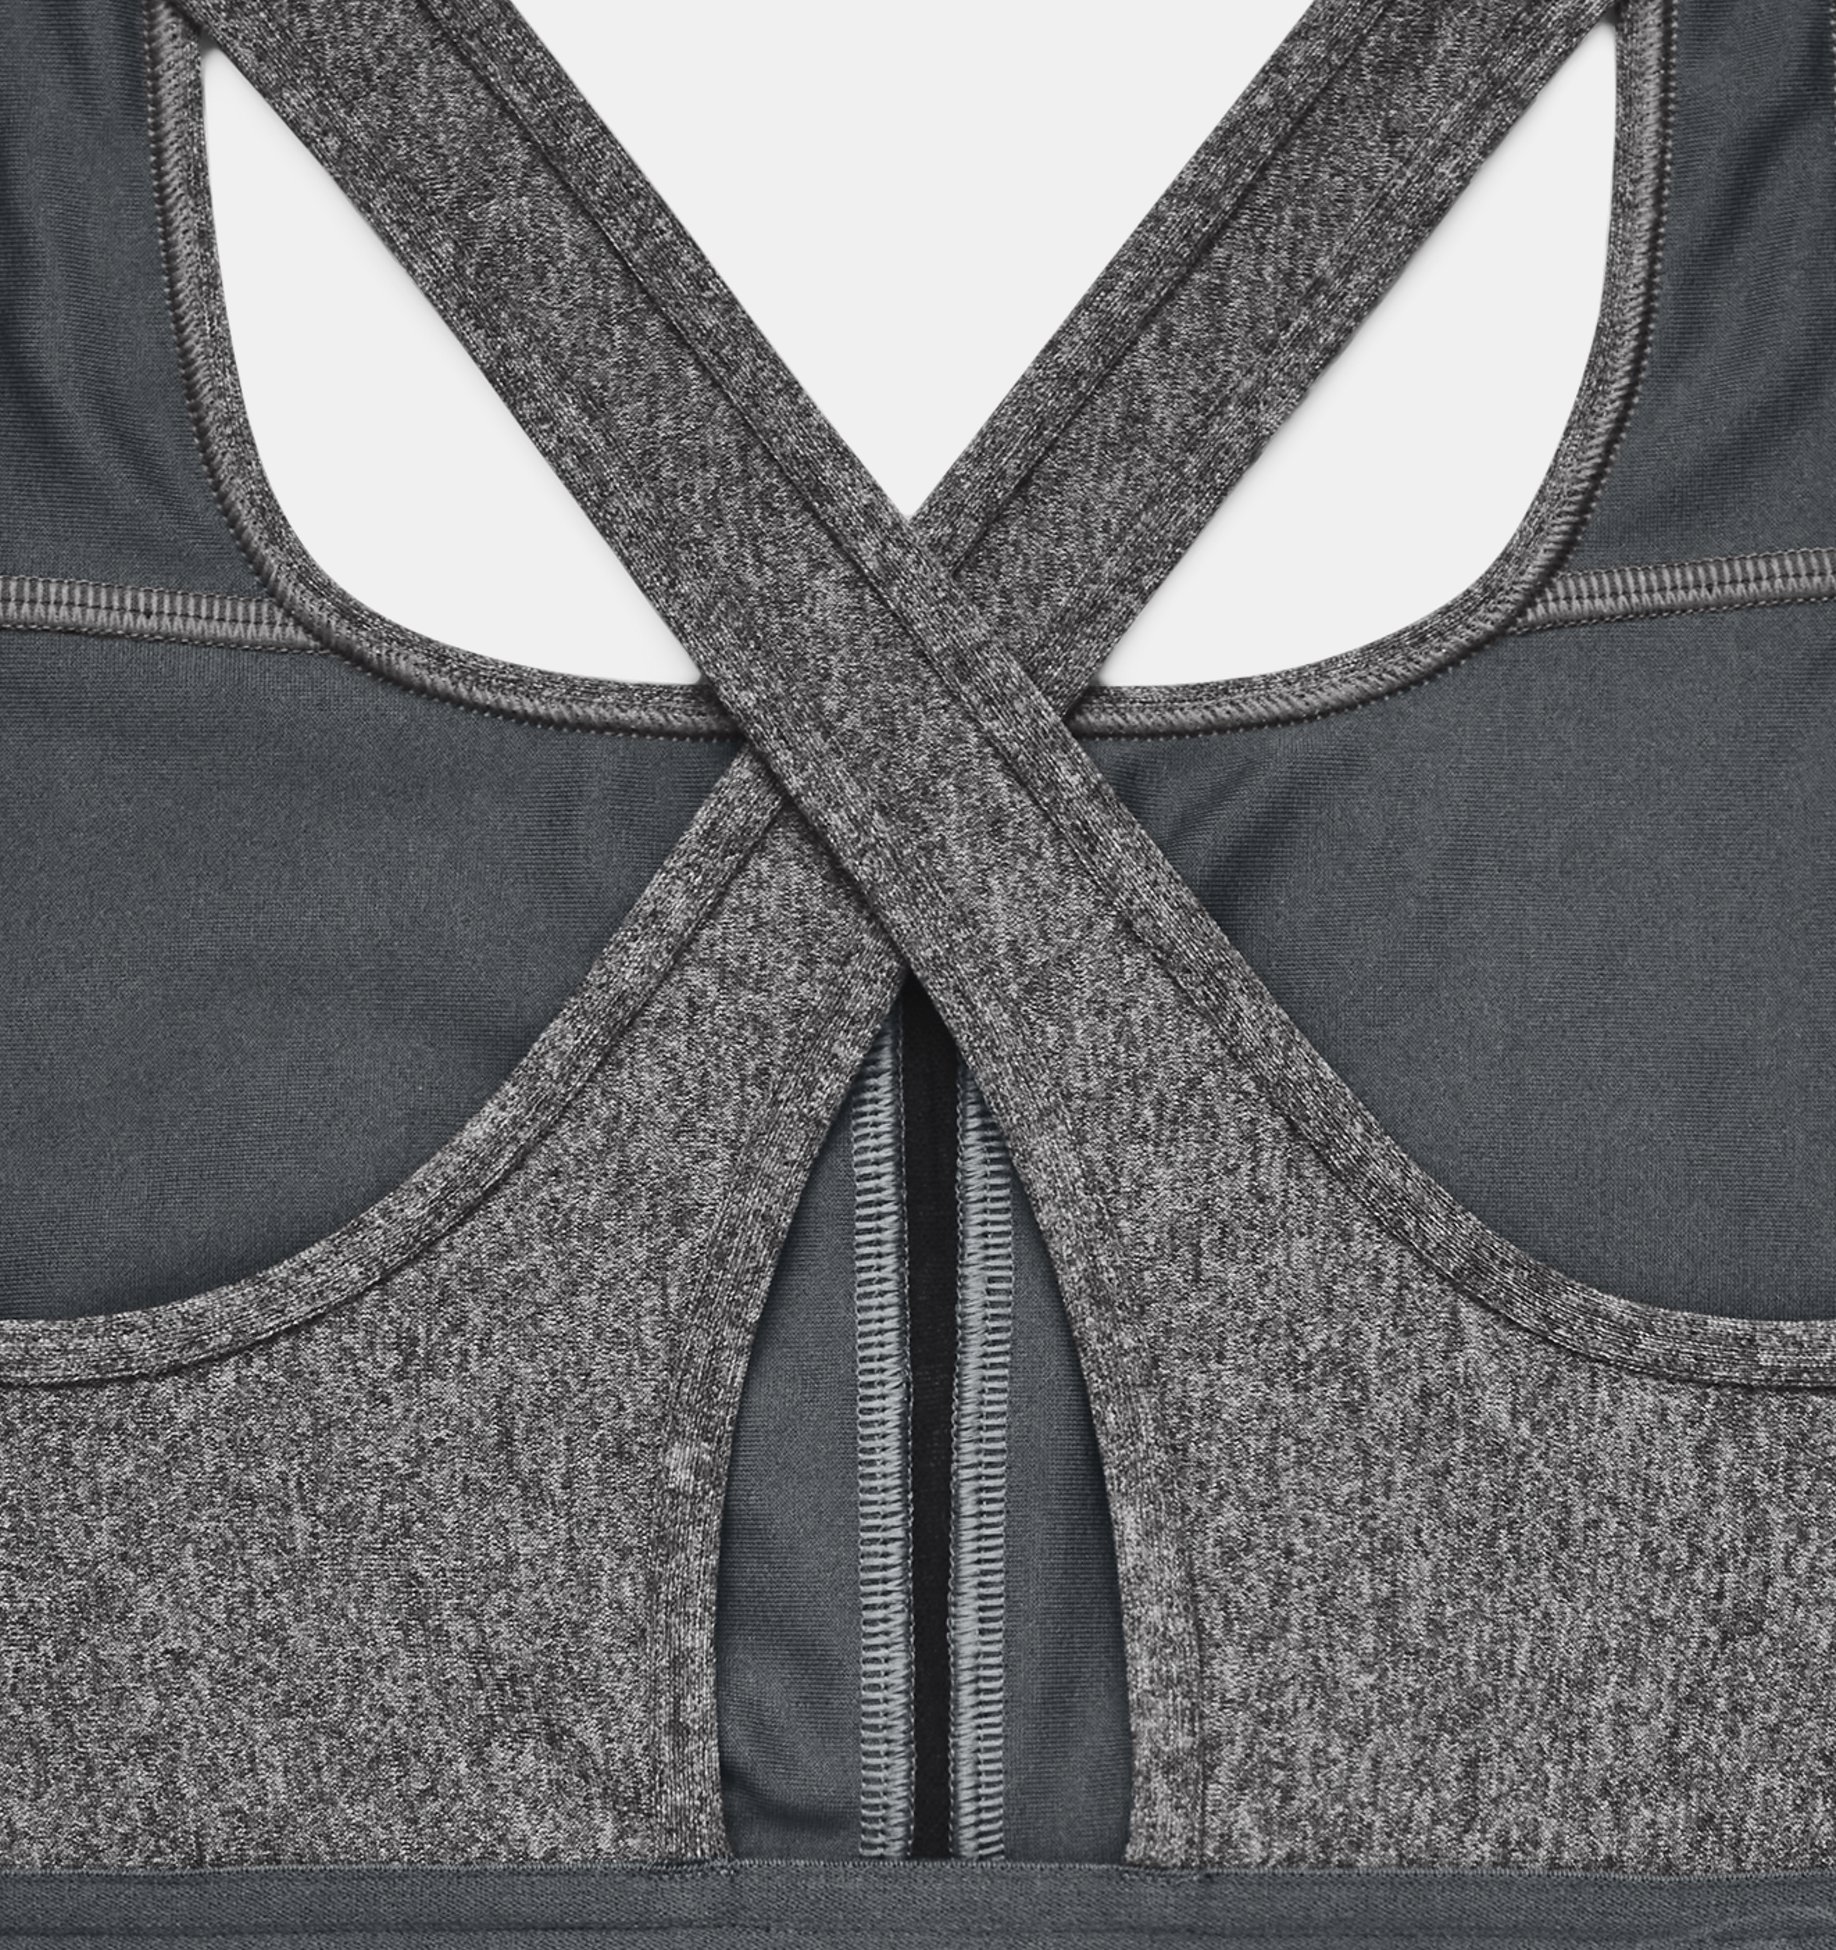 Rockwear Grey Sports Bra 16 - Reluv Clothing Australia